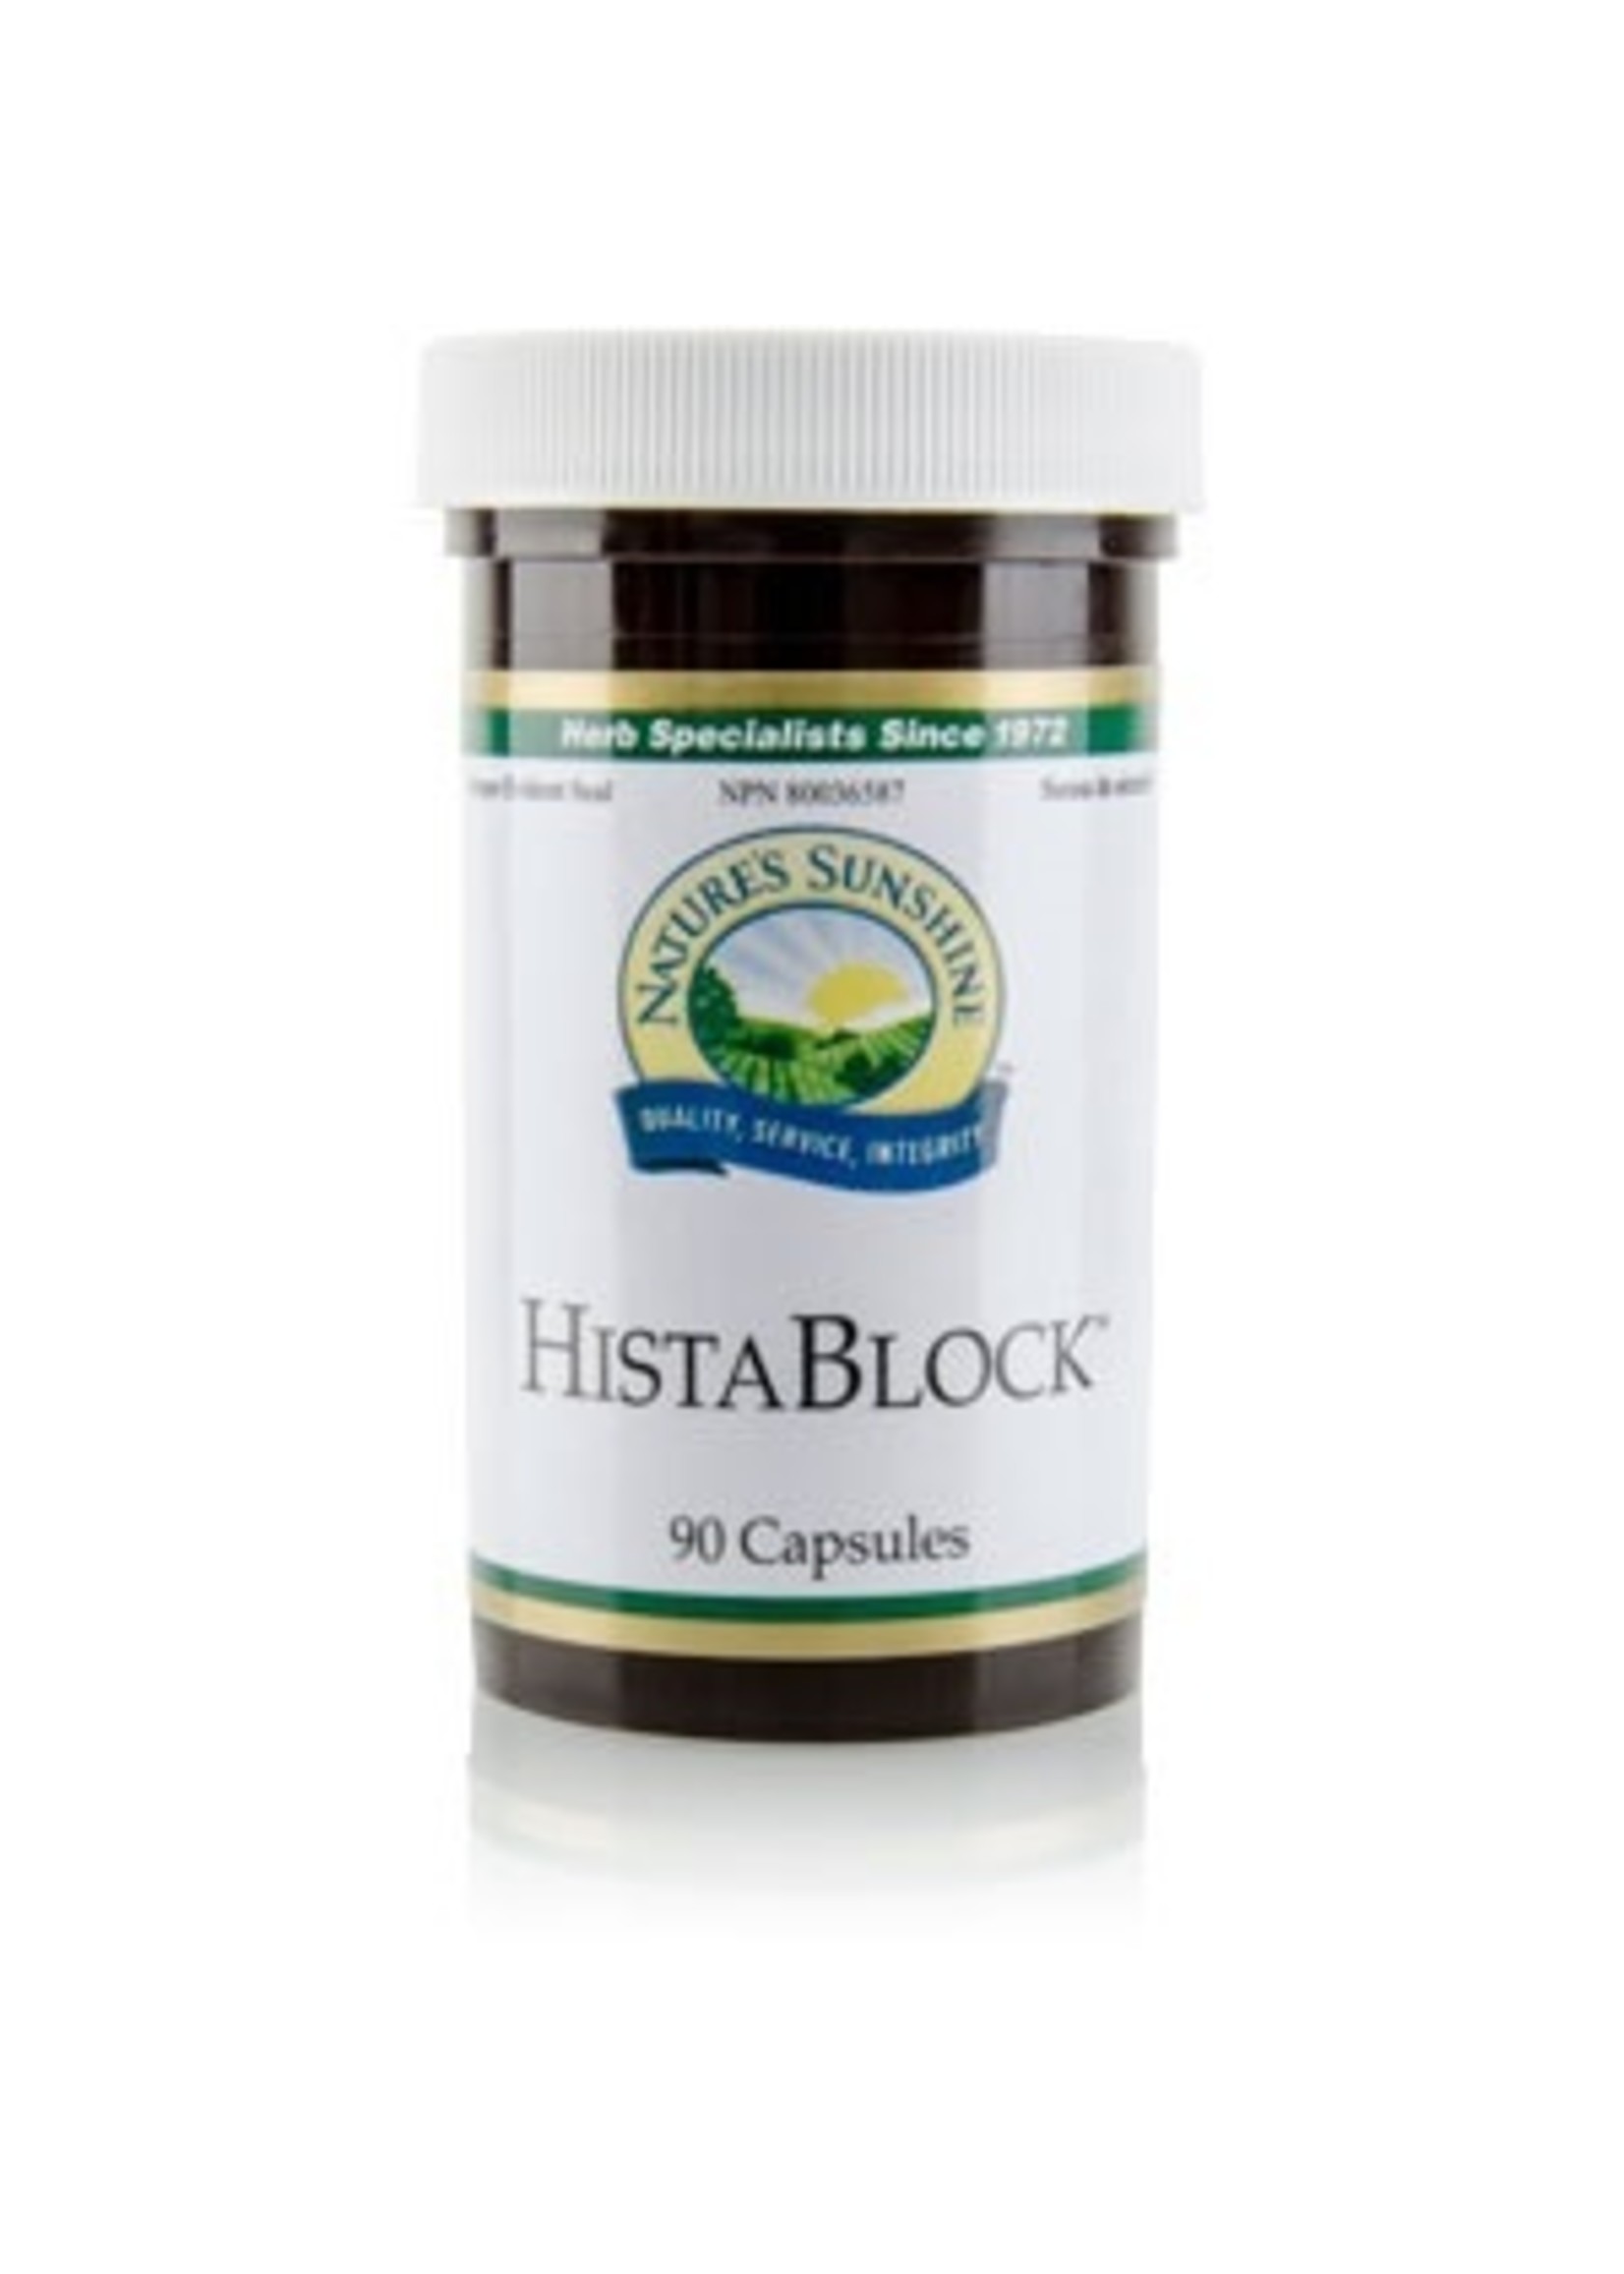 HistaBlock - 90 Caps